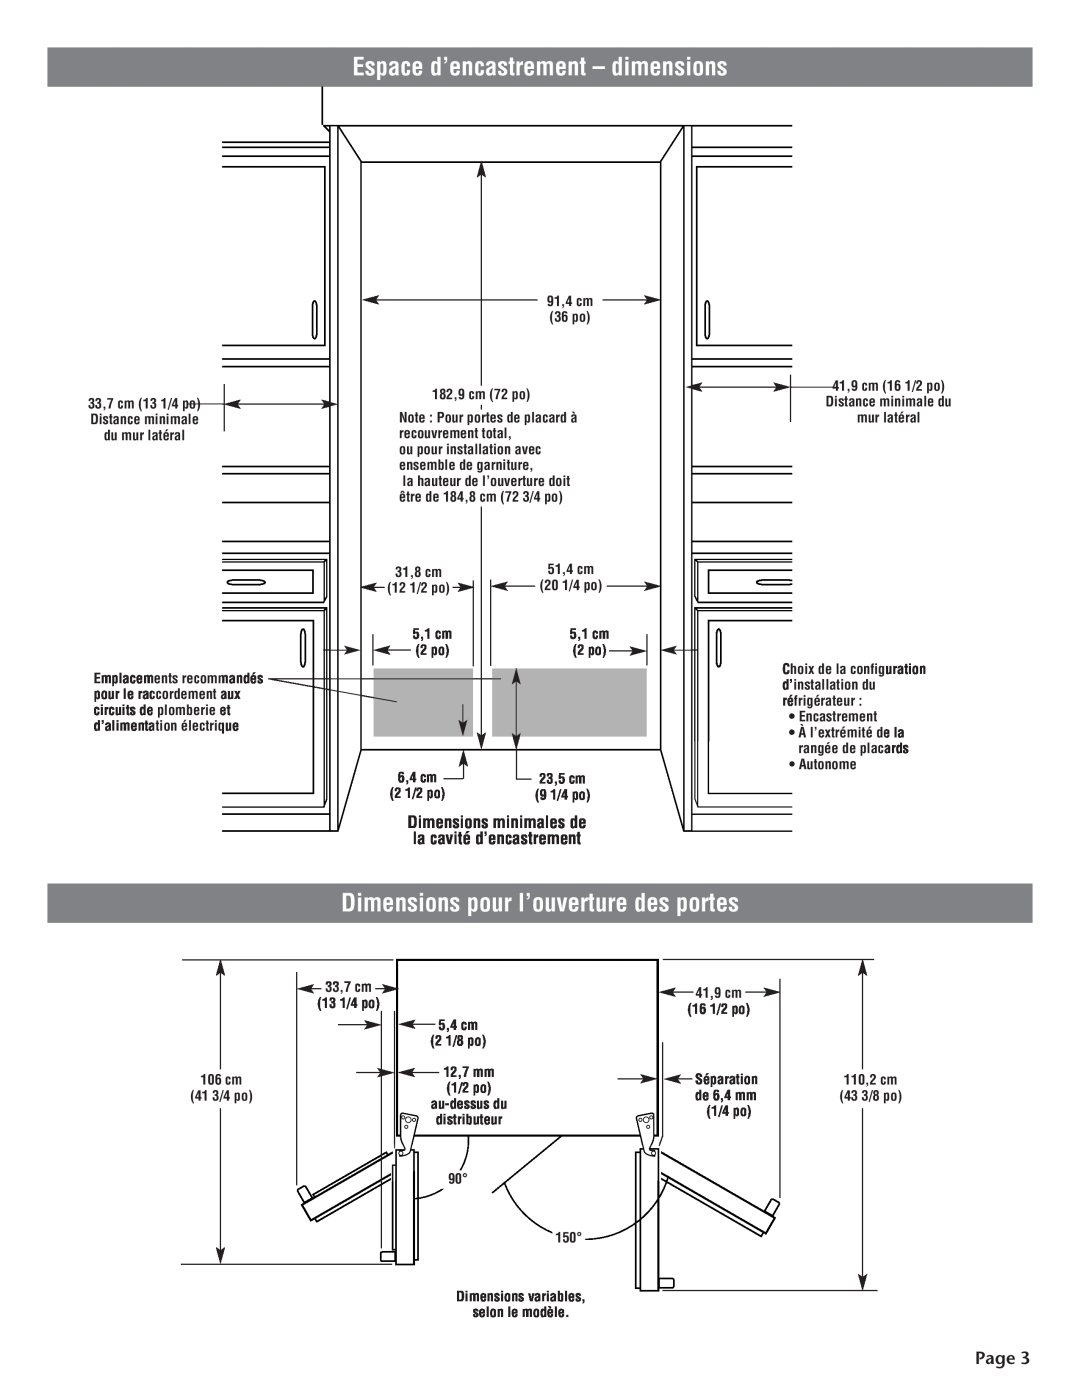 KitchenAid 2210725 manual Espace d’encastrement - dimensions, Dimensions pour l’ouverture des portes, Page 